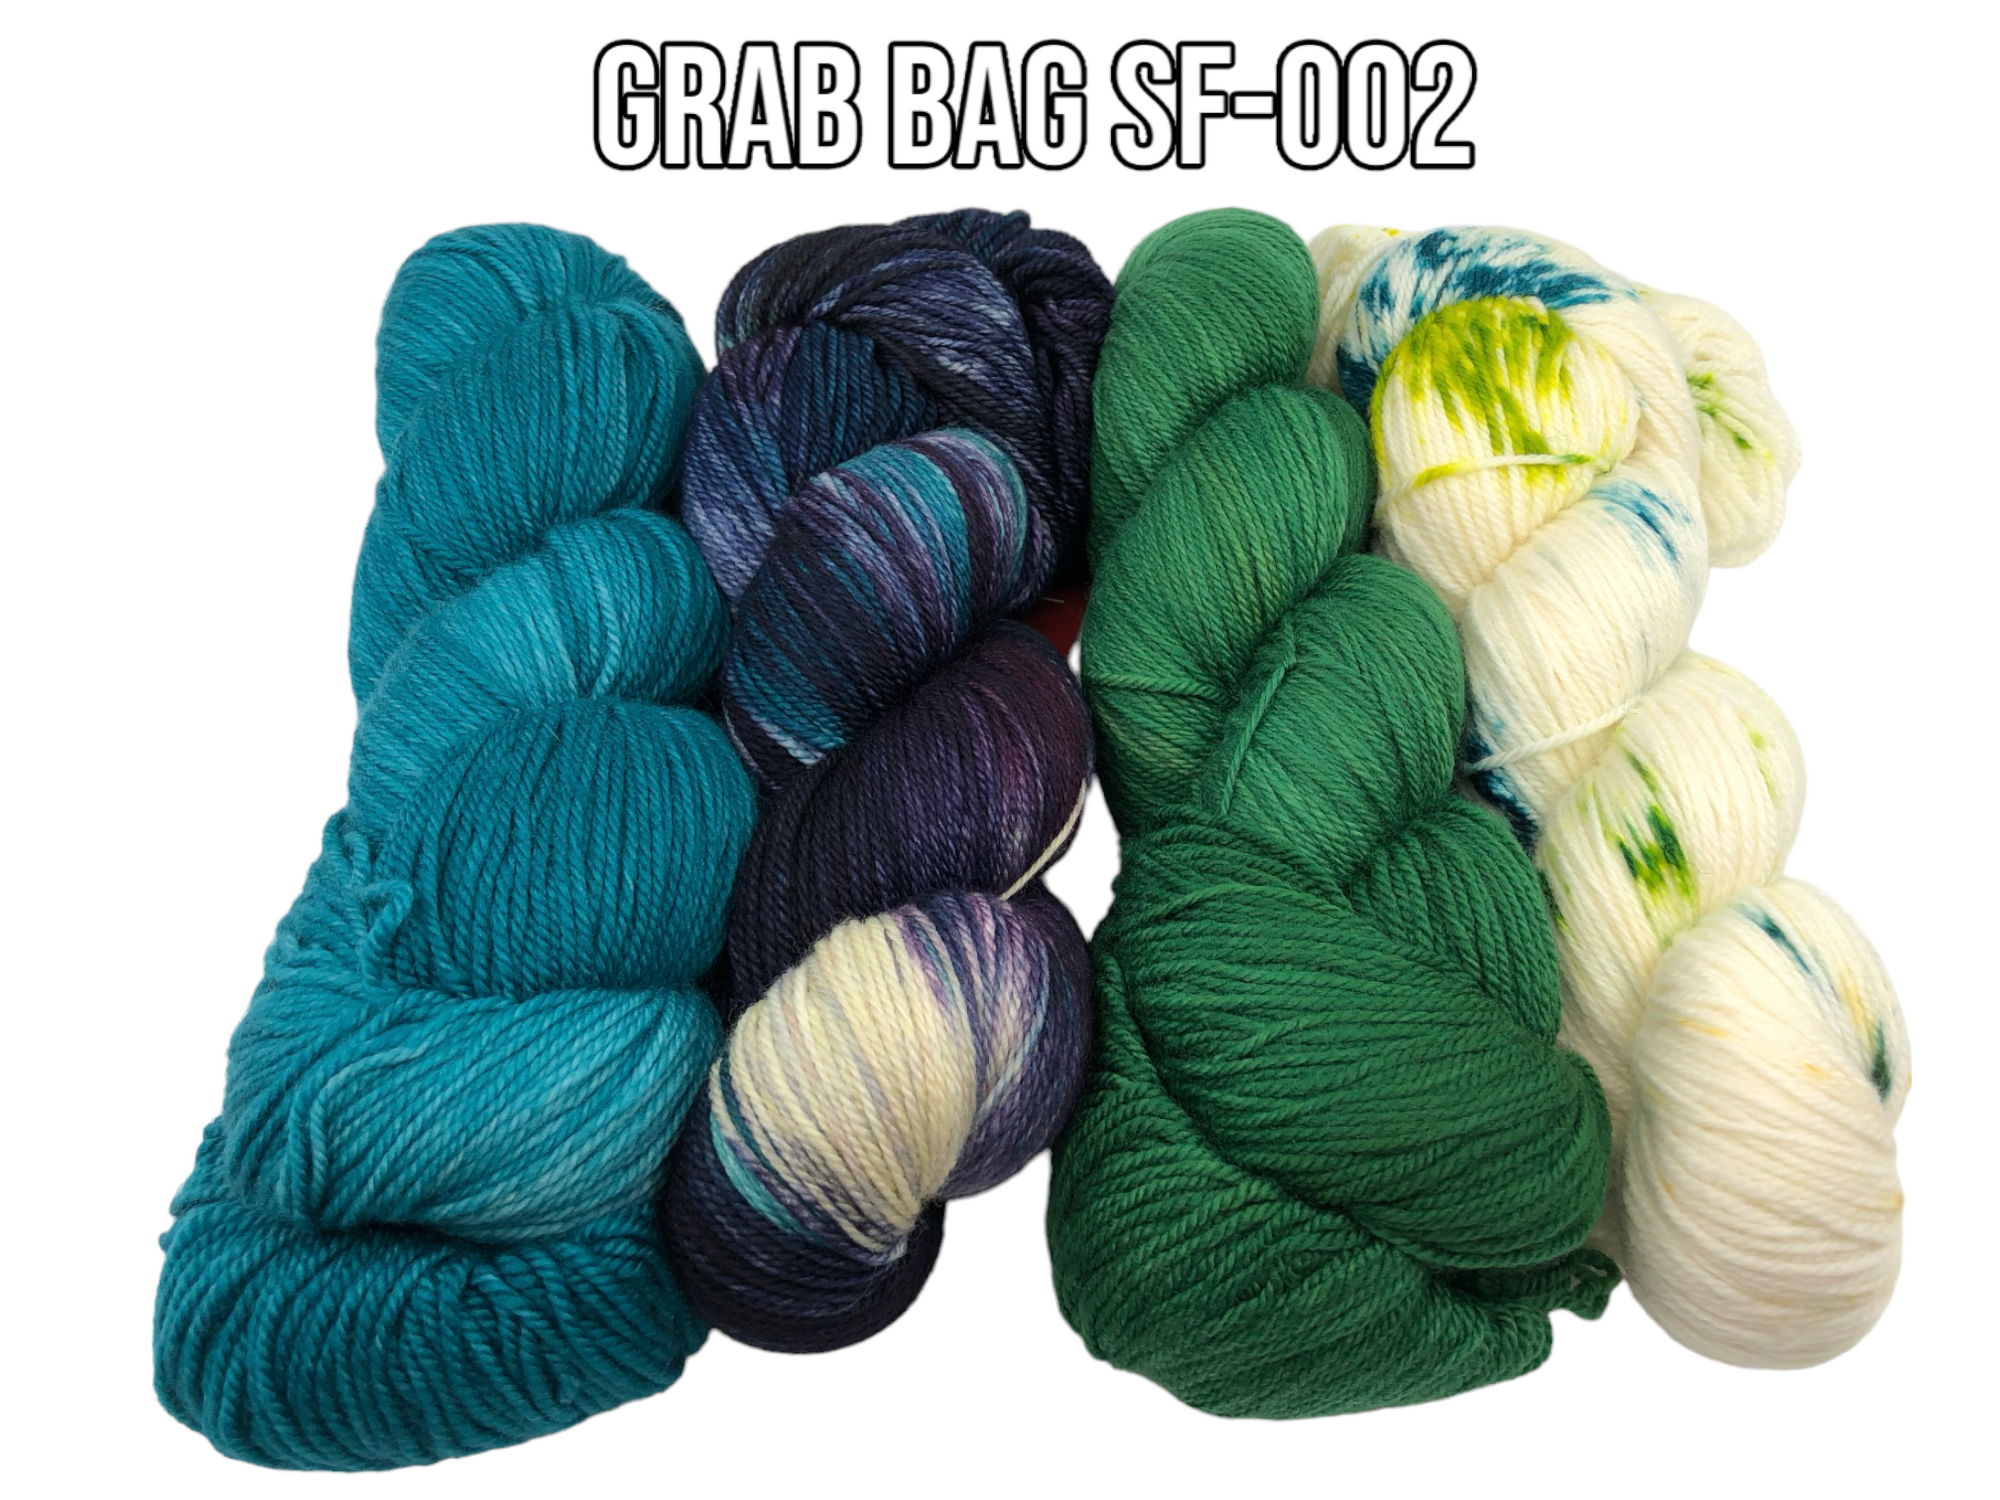 Grab Bag SF-002